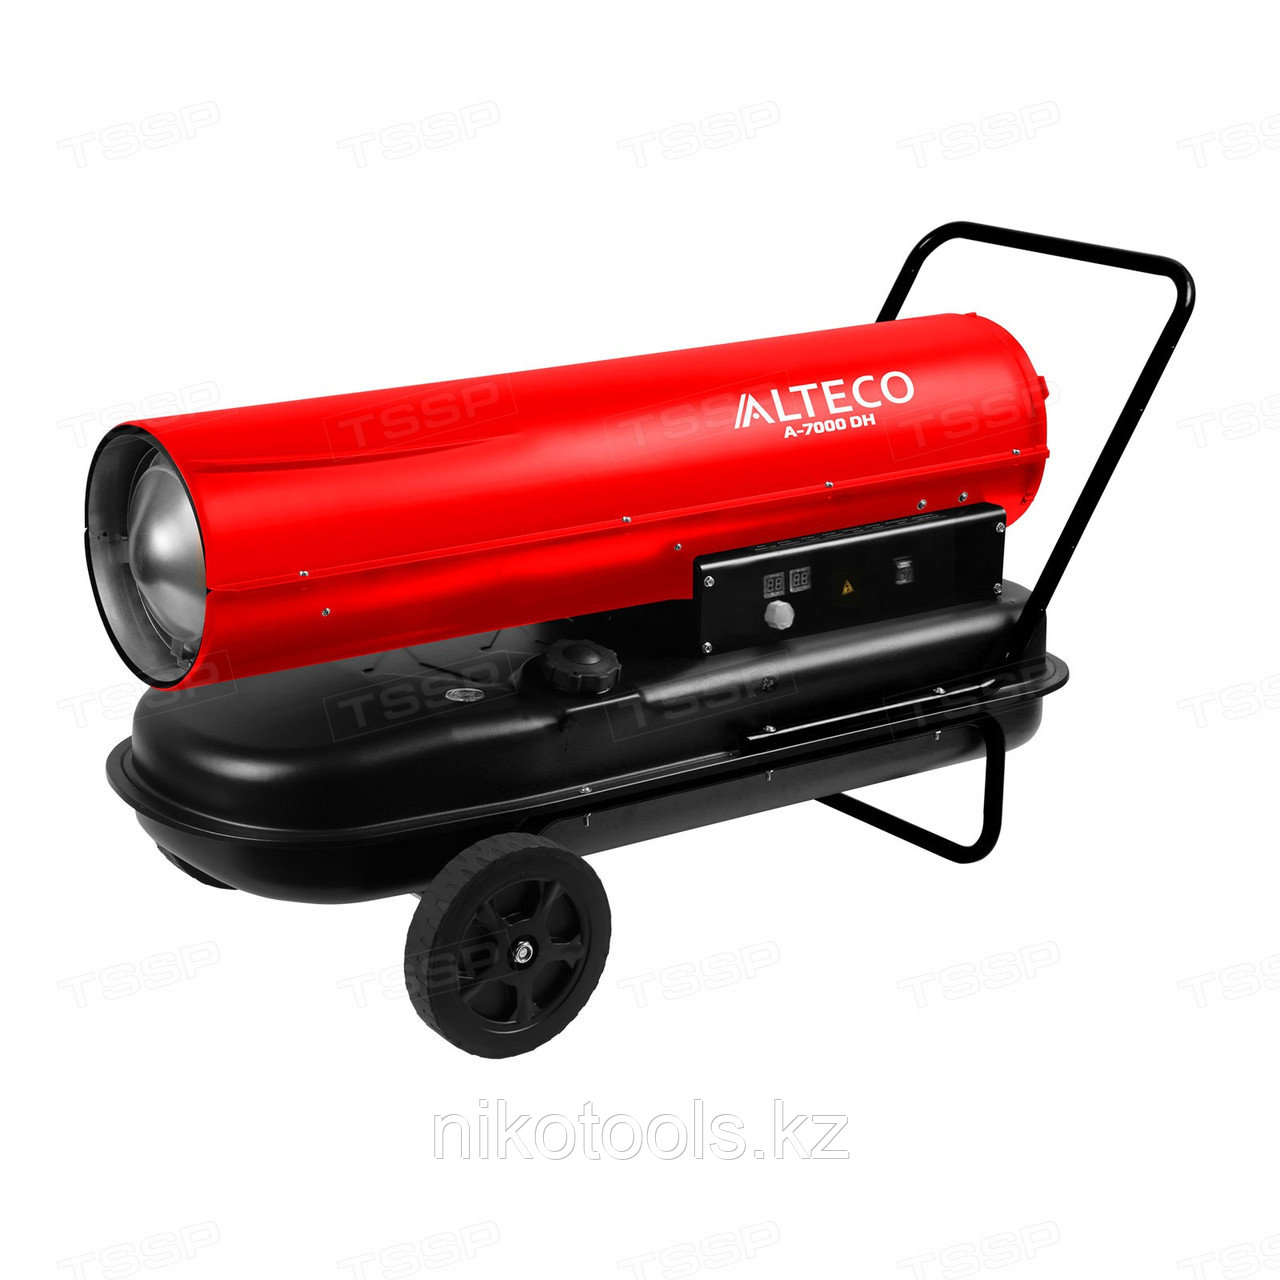 Нагреватель на жидком топливе ALTECO A-7000DH (70 кВт)